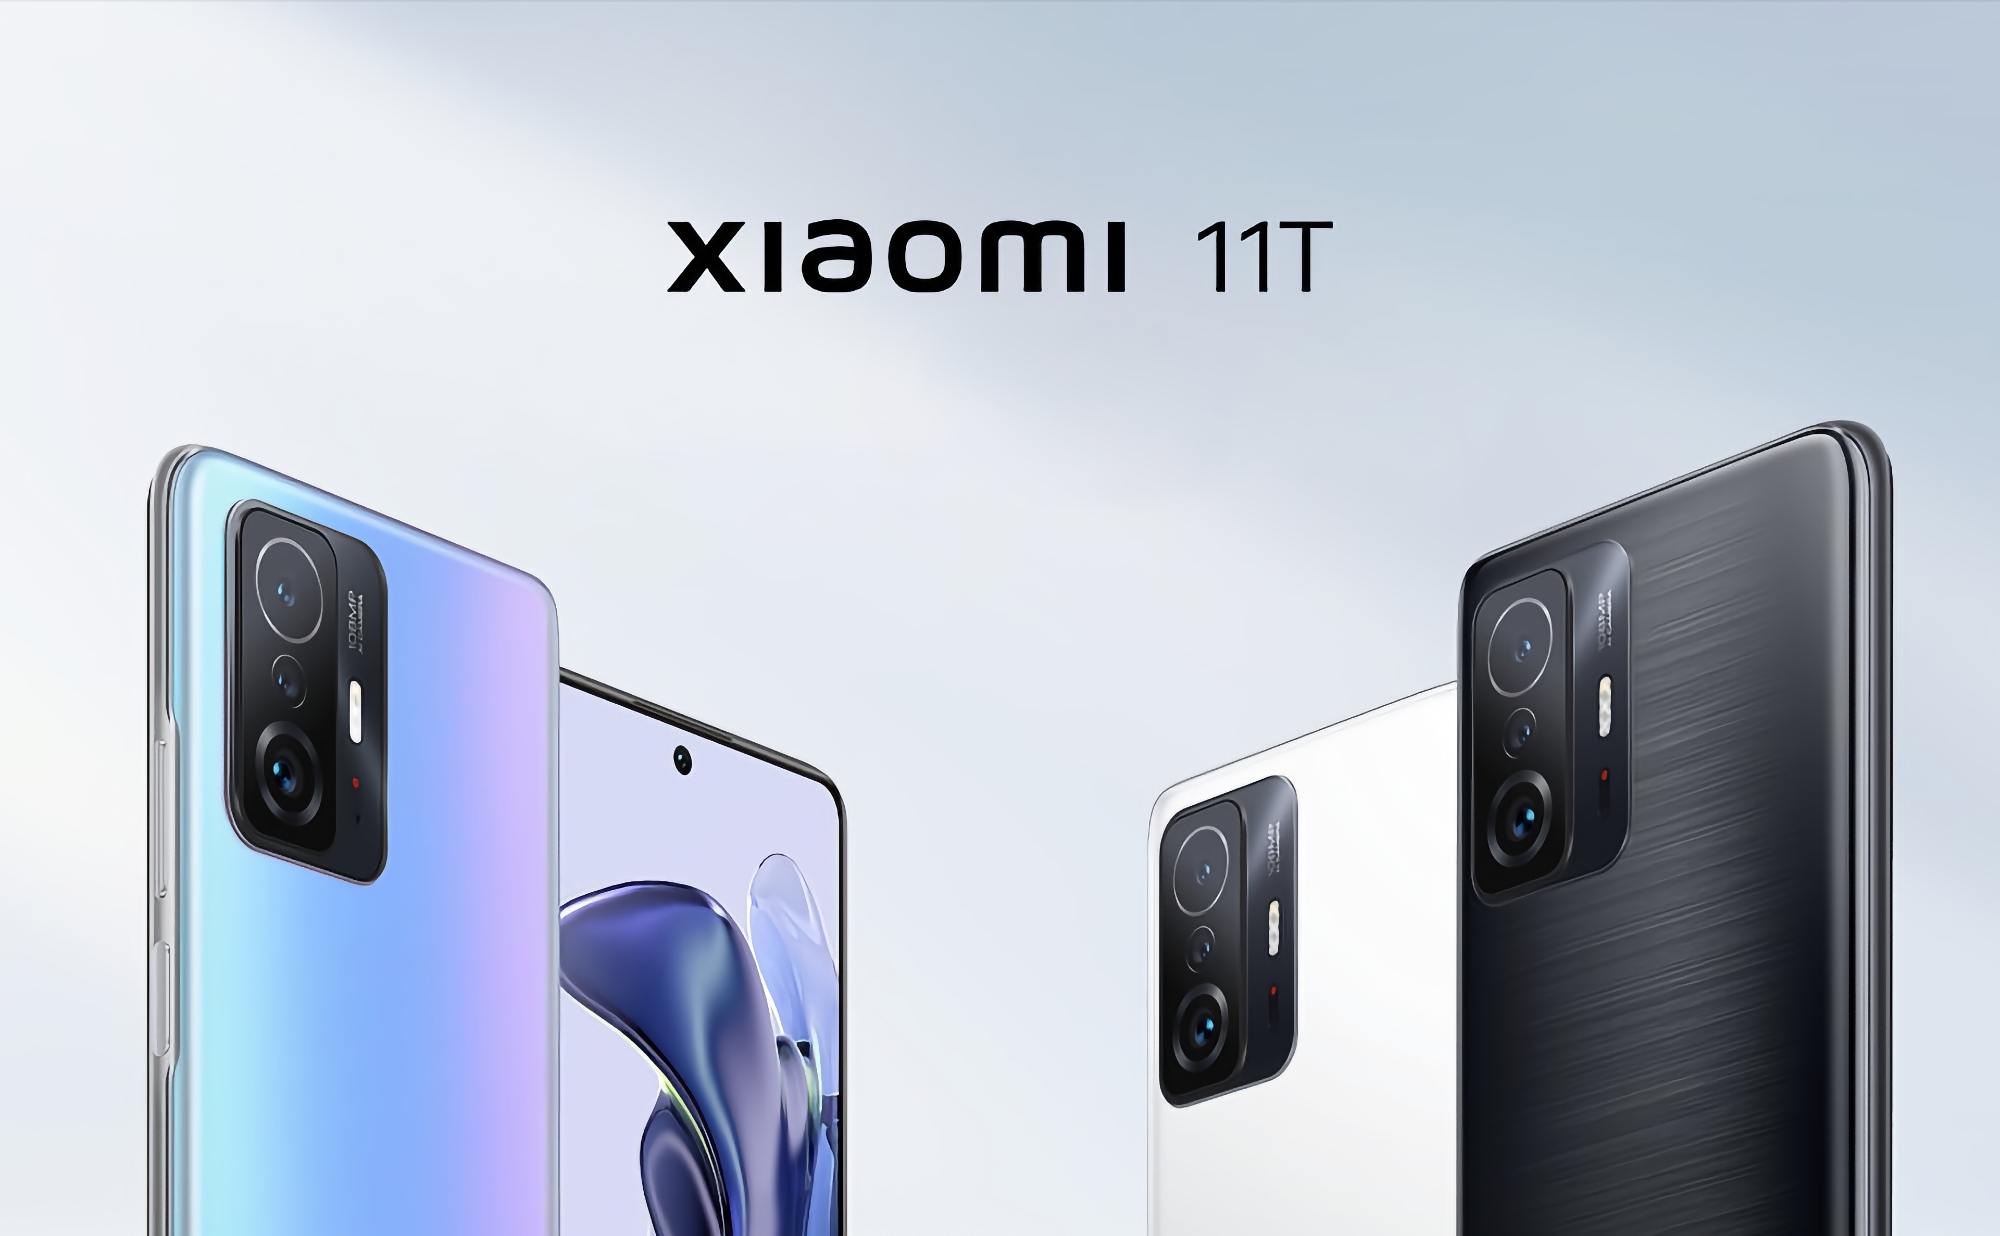 Xiaomi 11T: smartfon z procesorem MediaTek Dimensity 1200-Ultra, aparatem 108 MP, baterią 5000 mAh i ceną od 449 dolarów 